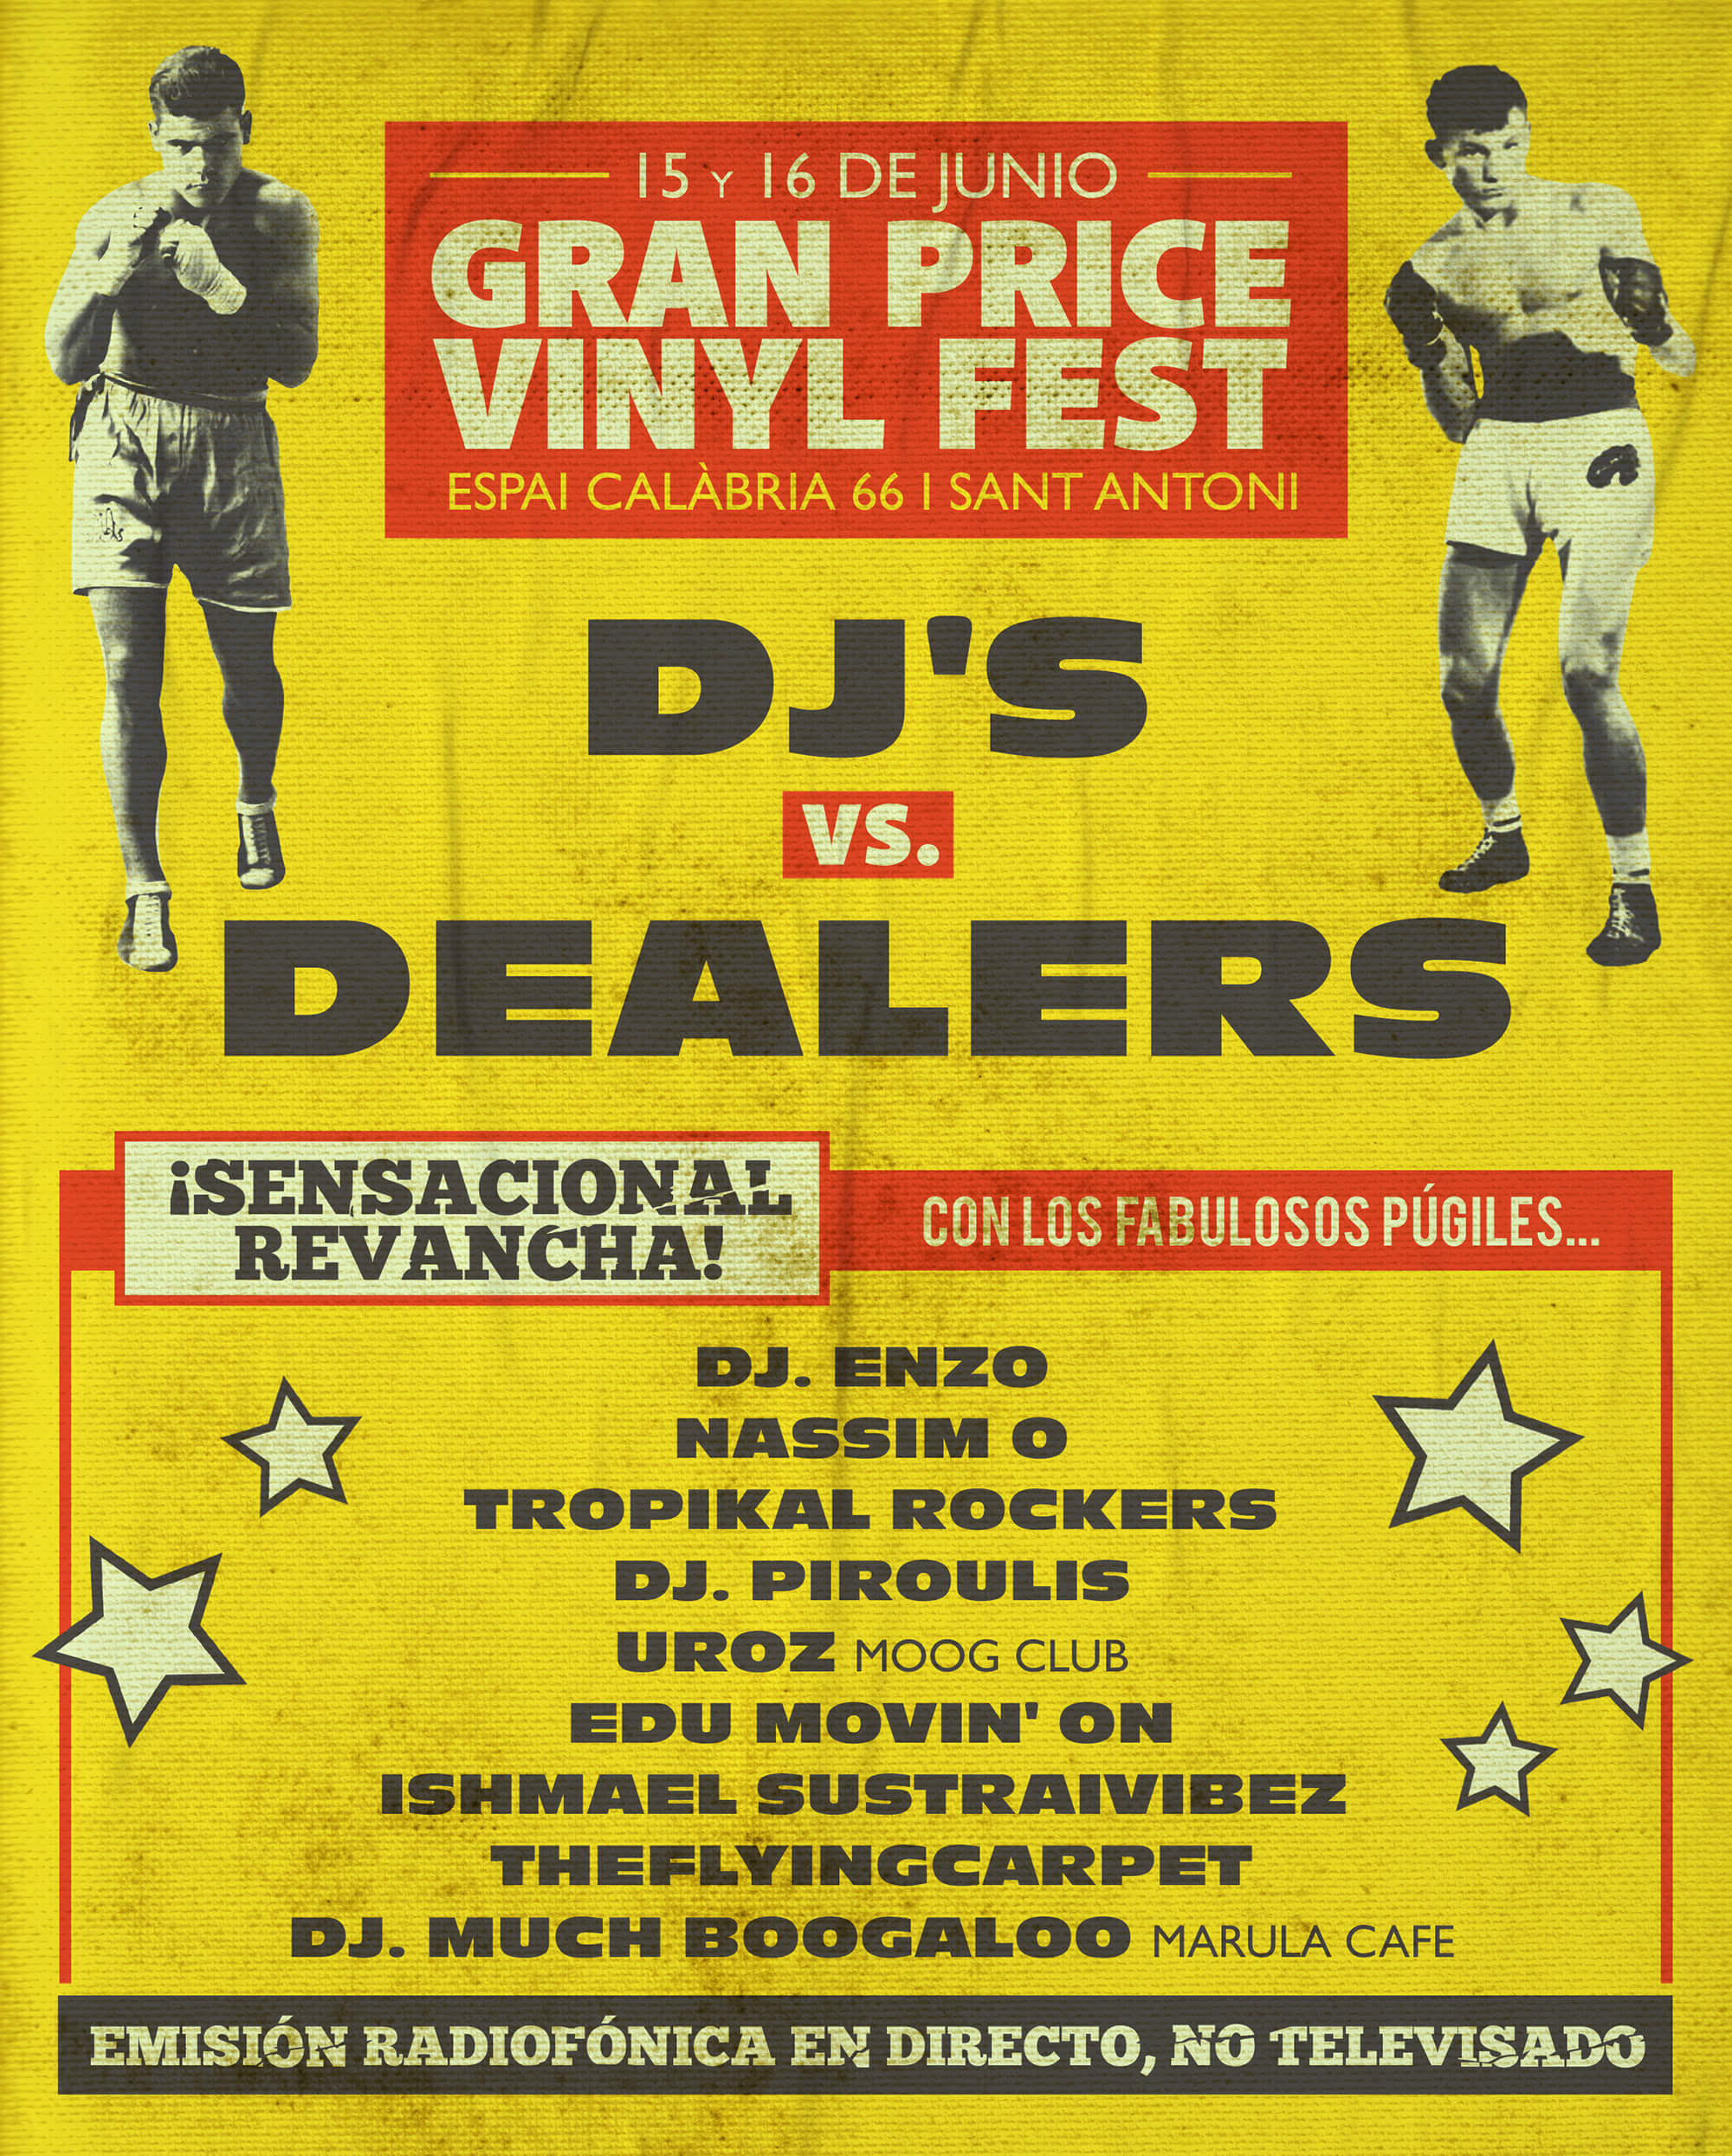 Gran Price Vinyl Fest 2019 – DJ’s vs Dealers